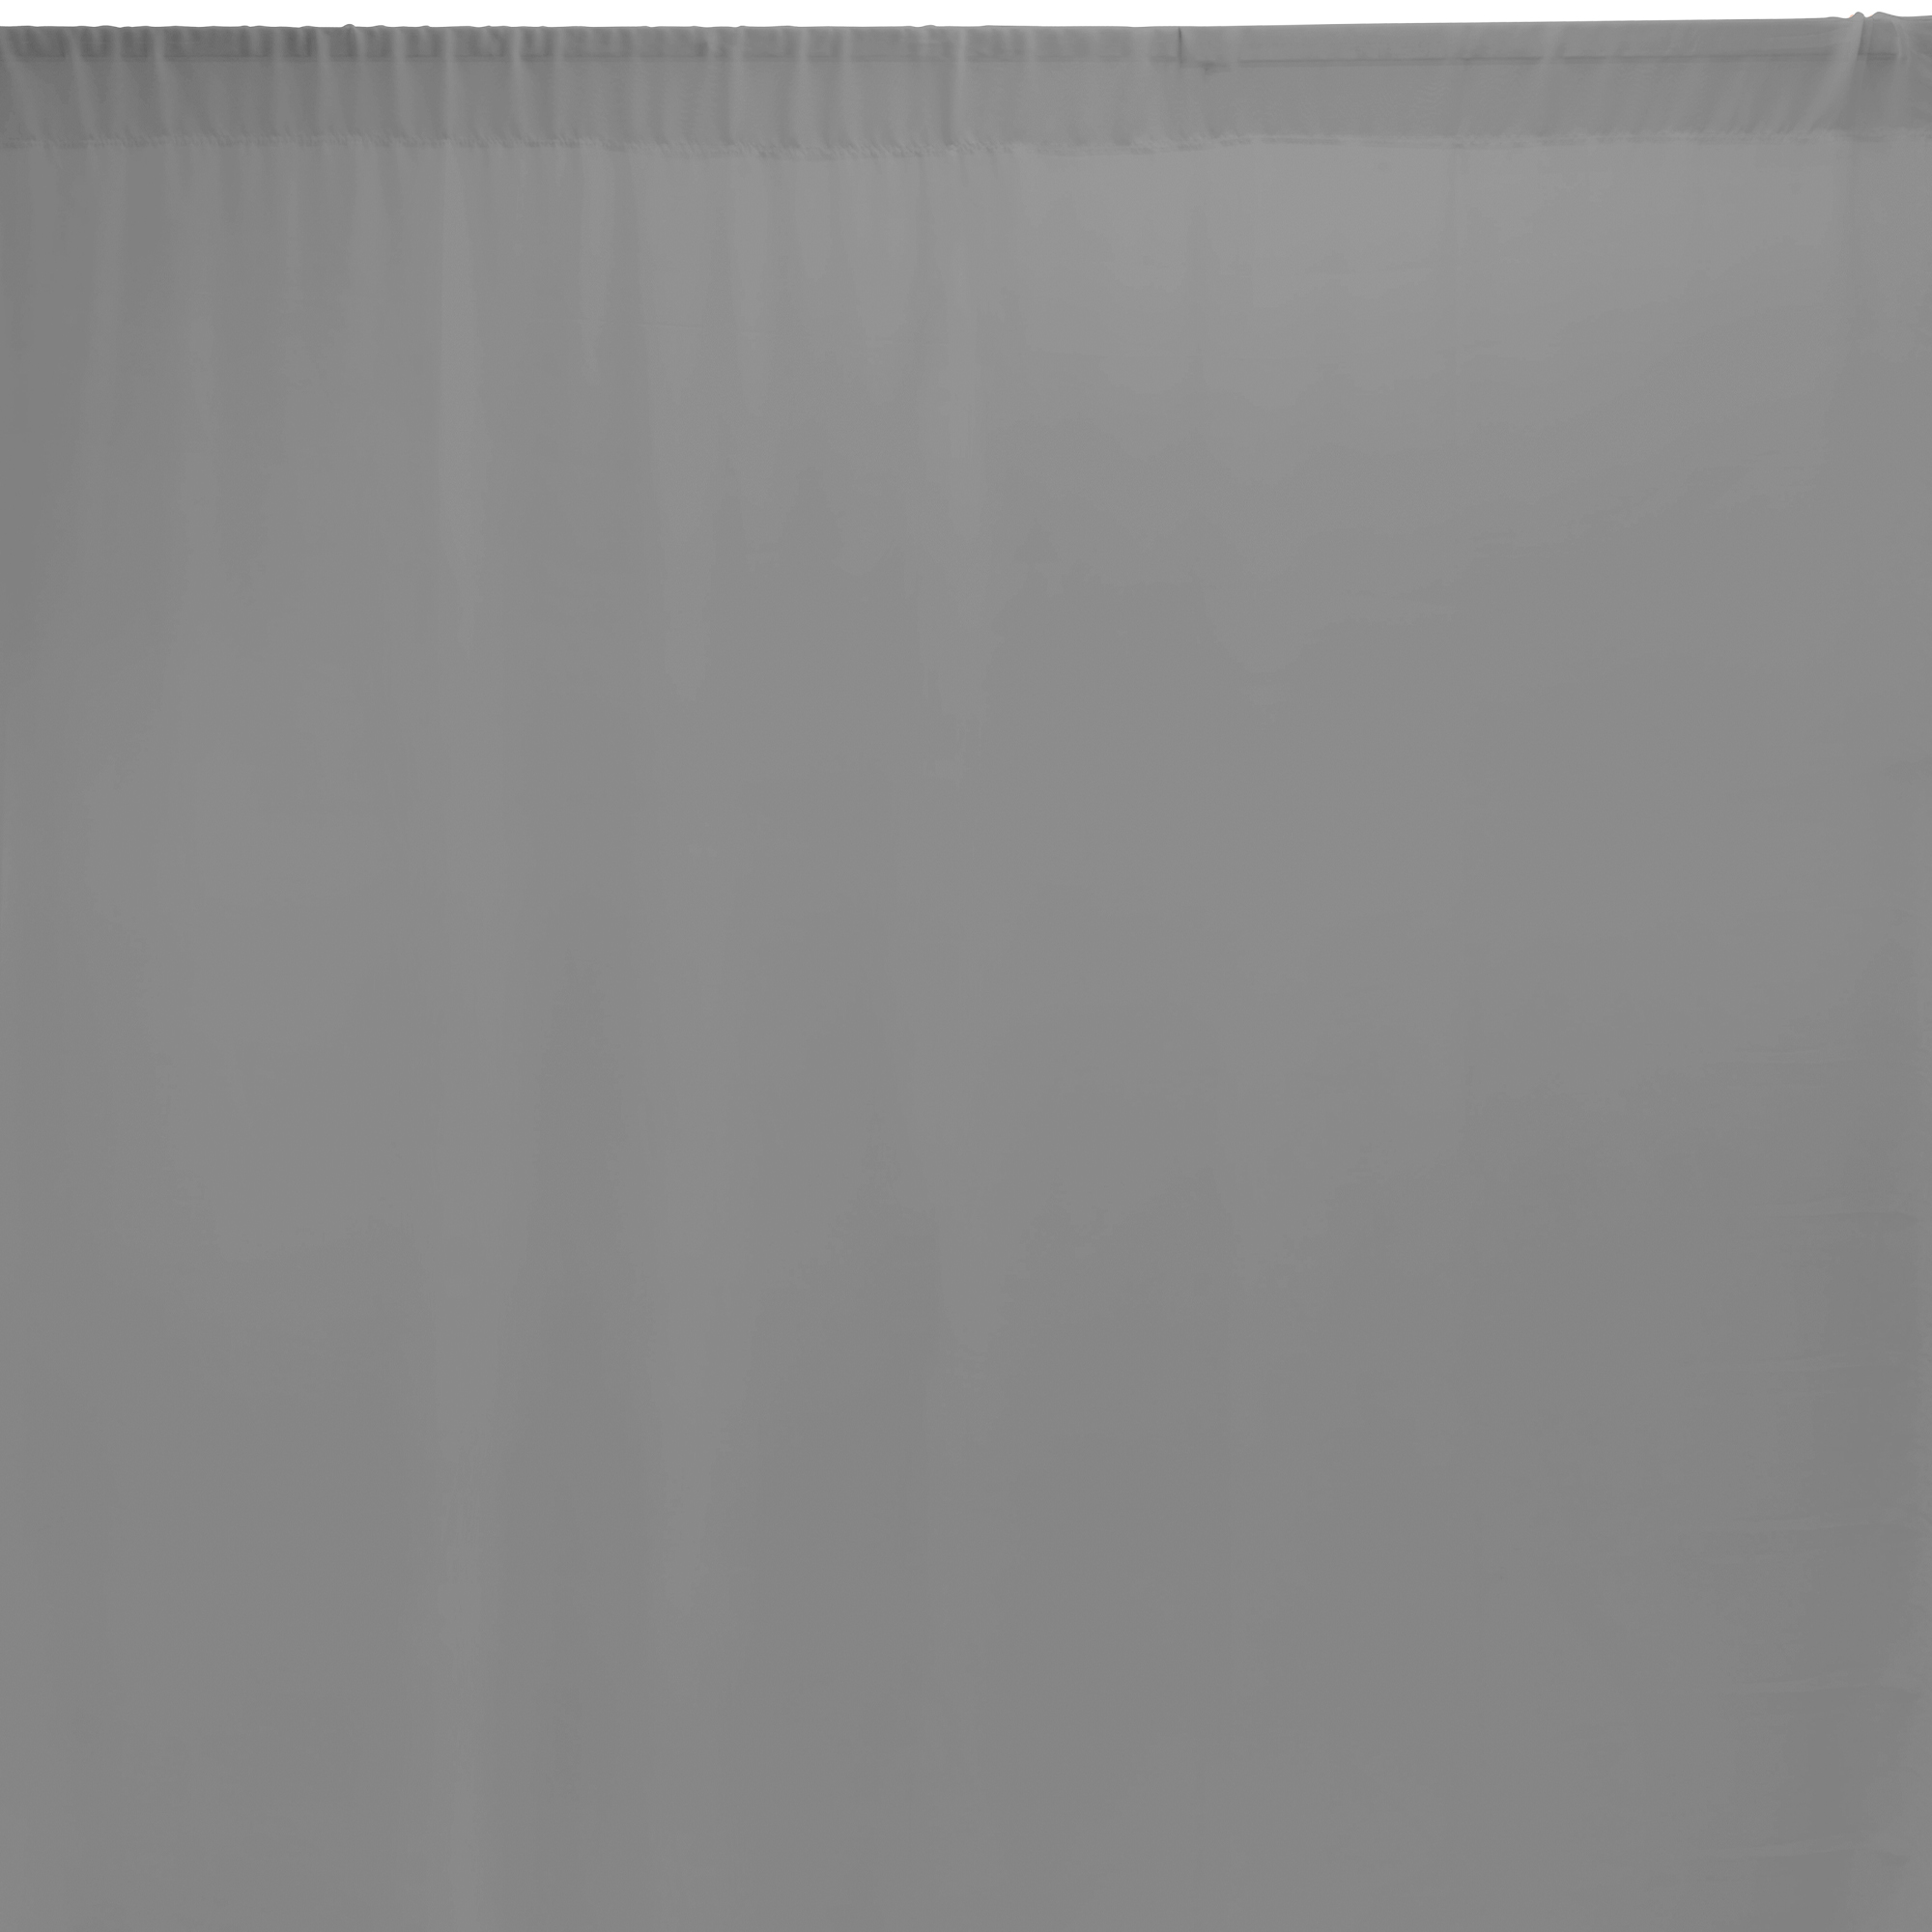 Chiffon Backdrop 5ft x 12ft - Silver